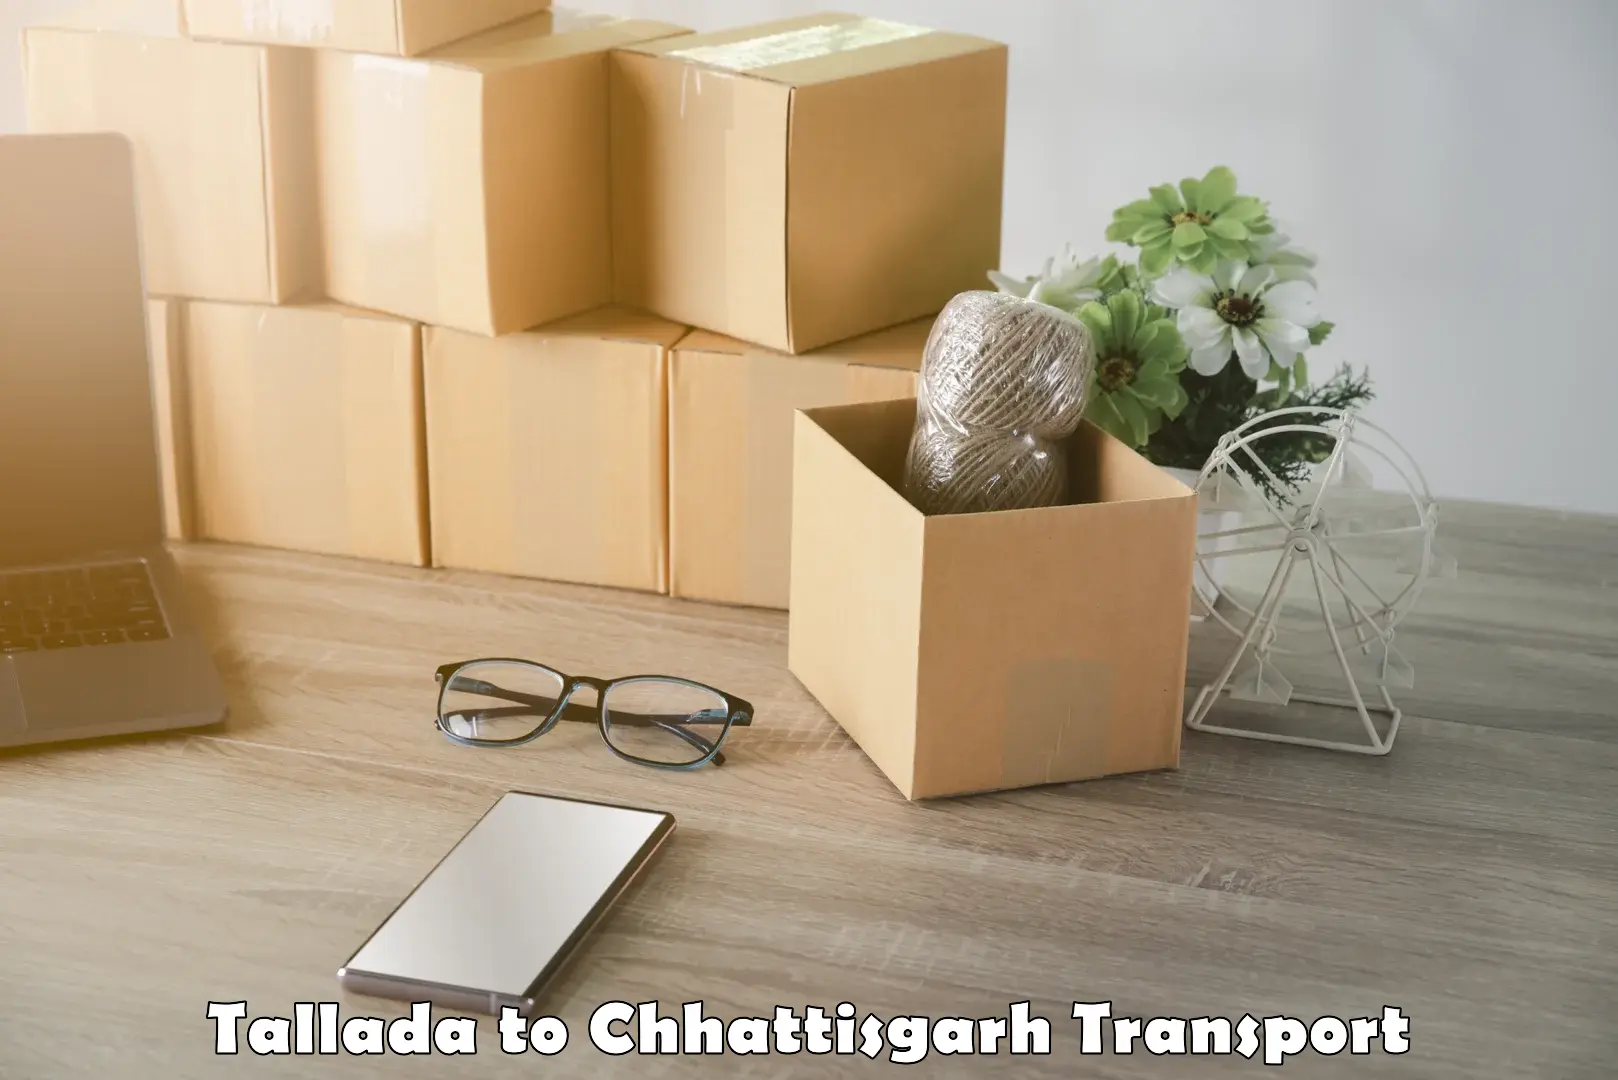 Daily transport service in Tallada to Korea Chhattisgarh